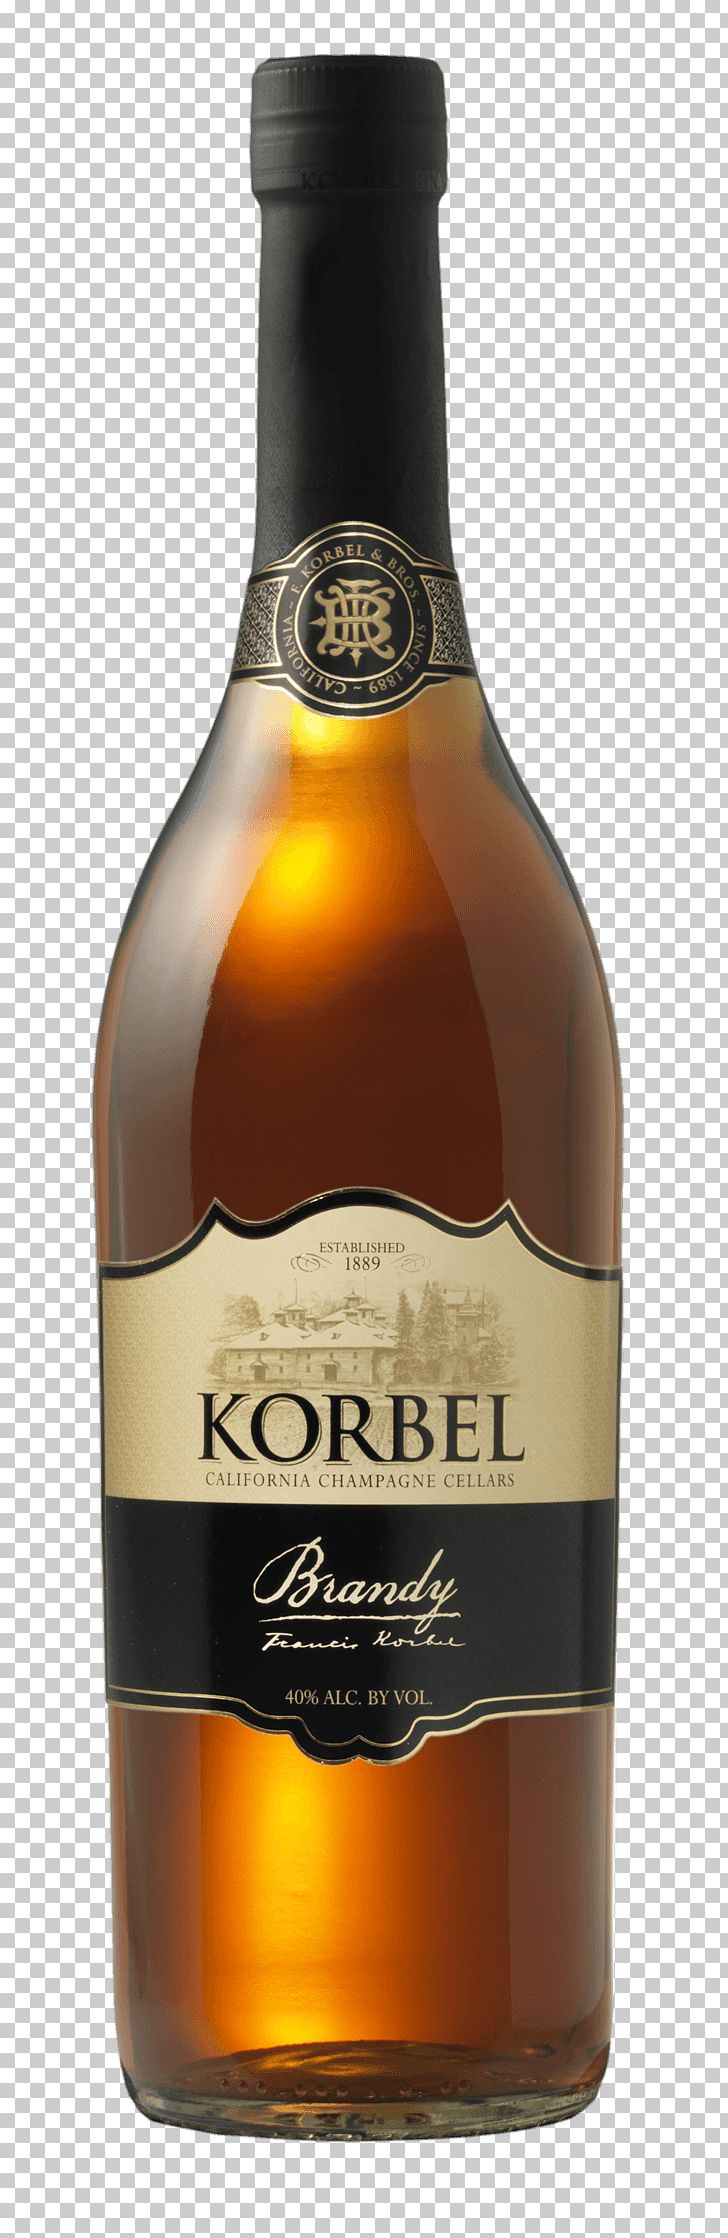 Korbel Champagne Cellars Brandy Distilled Beverage Wine Cognac PNG, Clipart, Alcoholic Beverage, Beer Bottle, Bottle, Brandy, Calvados Free PNG Download